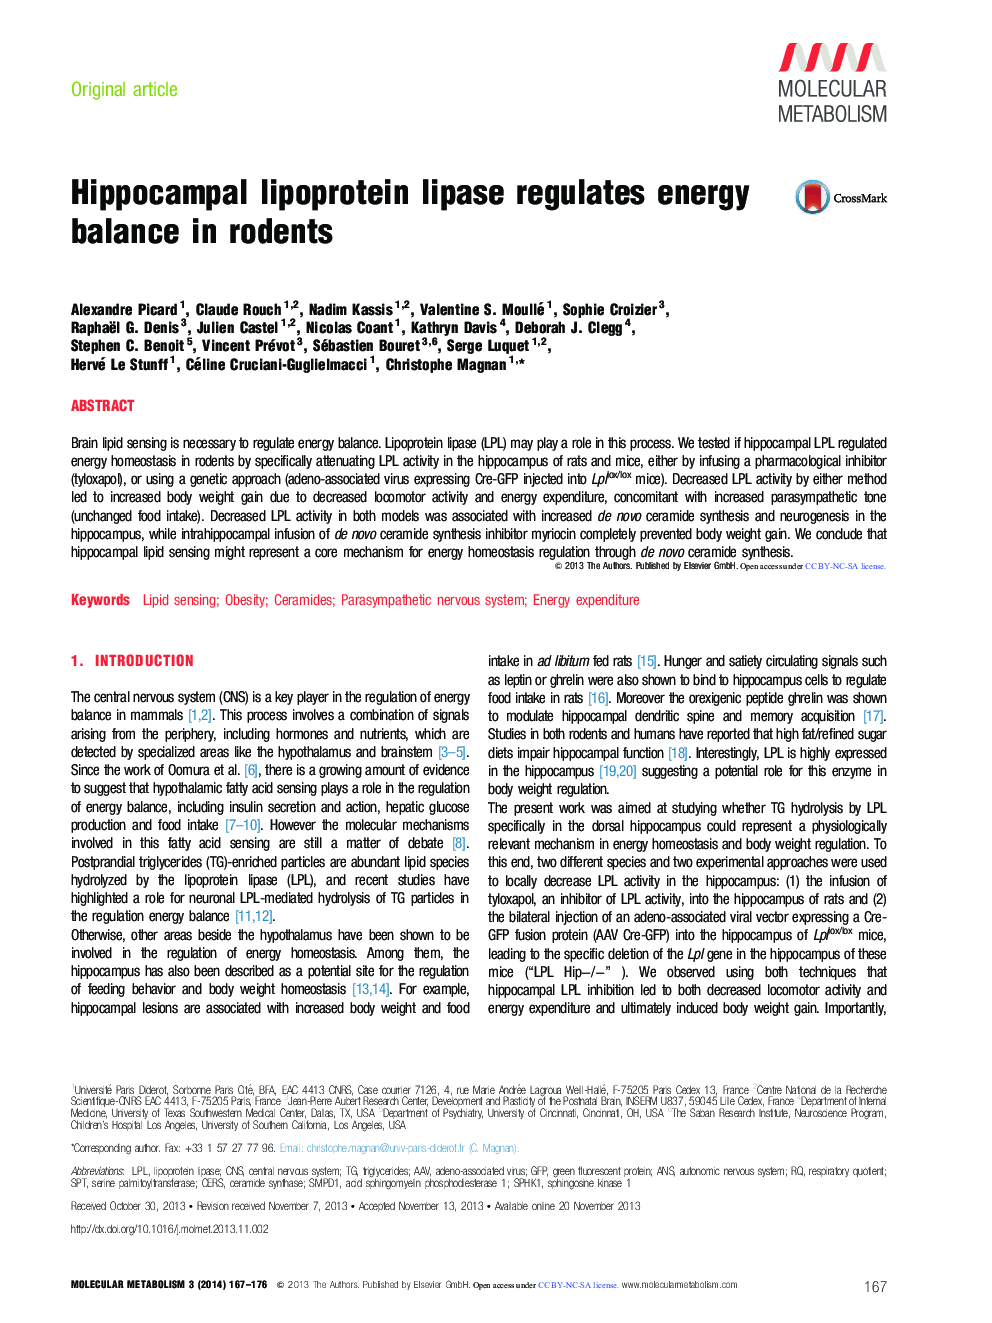 لیپاز لیپوپروتئین هیپوکامال تعادل انرژی در جوندگان را تنظیم می کند 